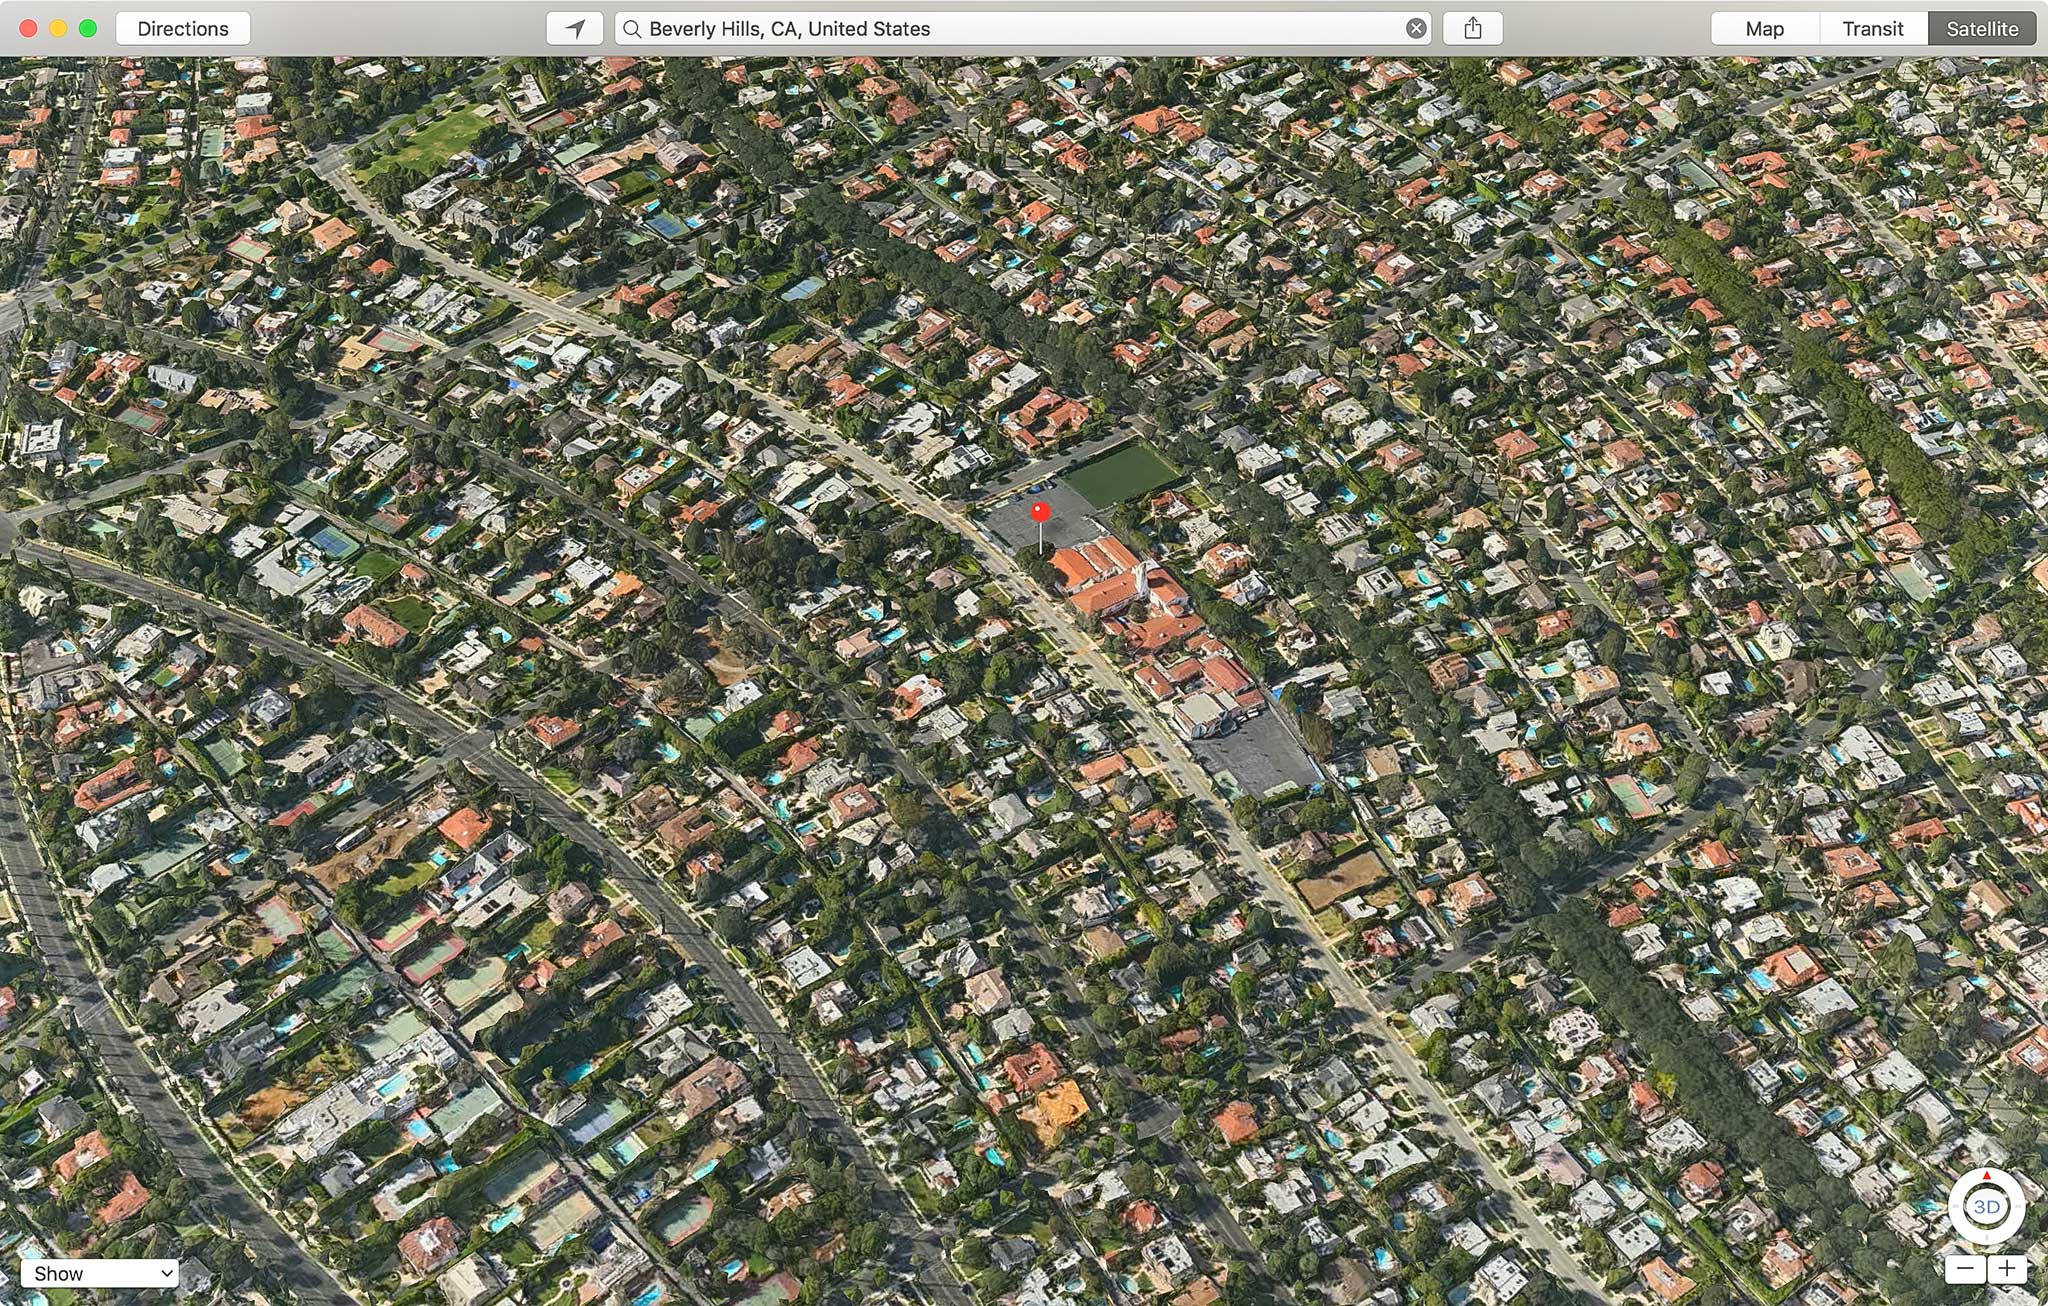 Apple Maps là một trong những ứng dụng bản đồ hàng đầu, cung cấp giải pháp tối ưu cho các chuyến đi. Với Apple Maps, bạn có thể tìm kiếm điểm đến của mình dễ dàng hơn, điều hướng trên đường phố một cách hiệu quả hơn, và thậm chí lưu giữ các thông tin quan trọng để sử dụng trong tương lai.